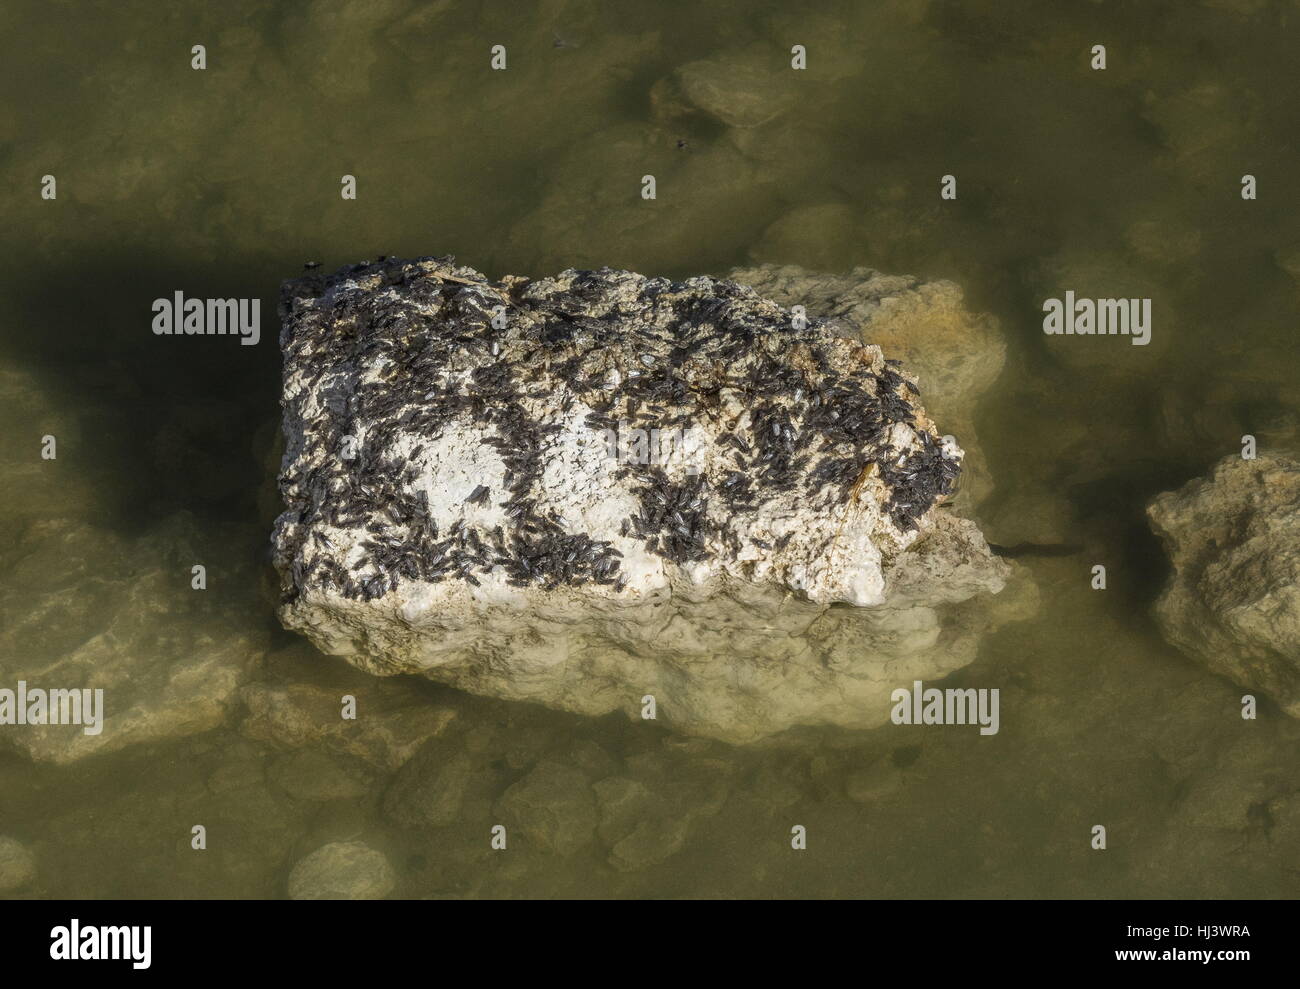 Ephydra hians mouches Alkali, recueillies sur la roche dans le lac Mono, en Californie Banque D'Images